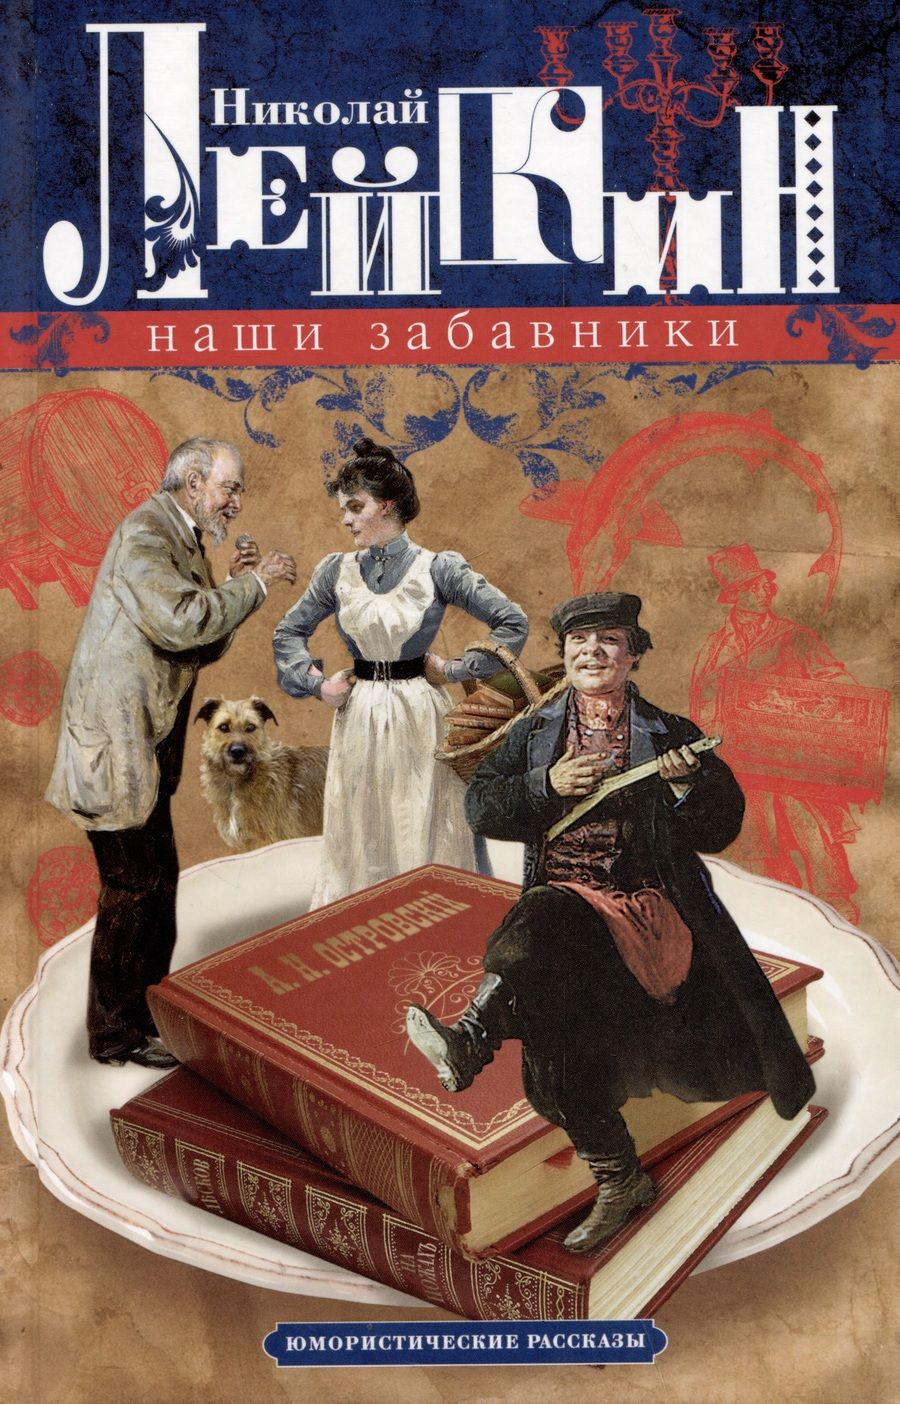 Обложка книги "Лейкин: Наши забавники. Юмористические рассказы"